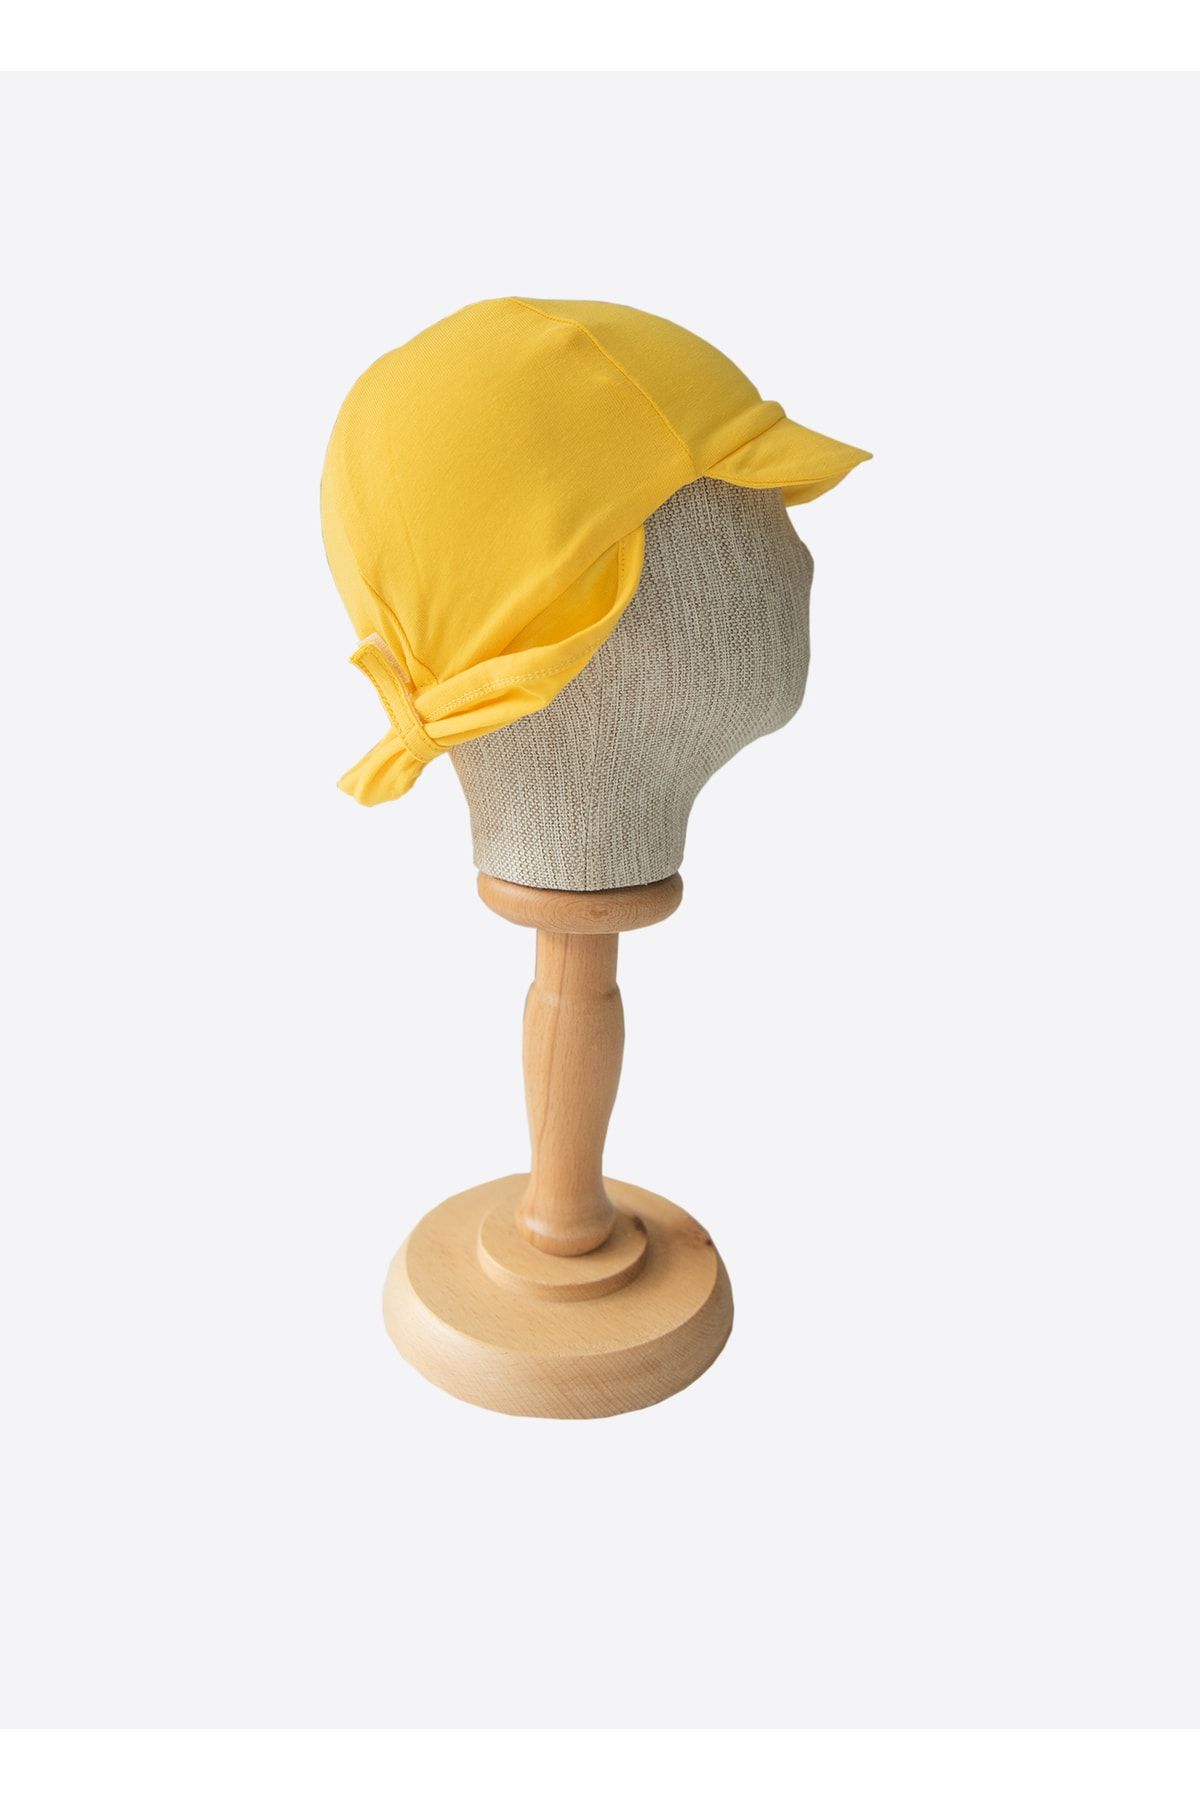 kitikate Organik Marvın Şapka-sarı